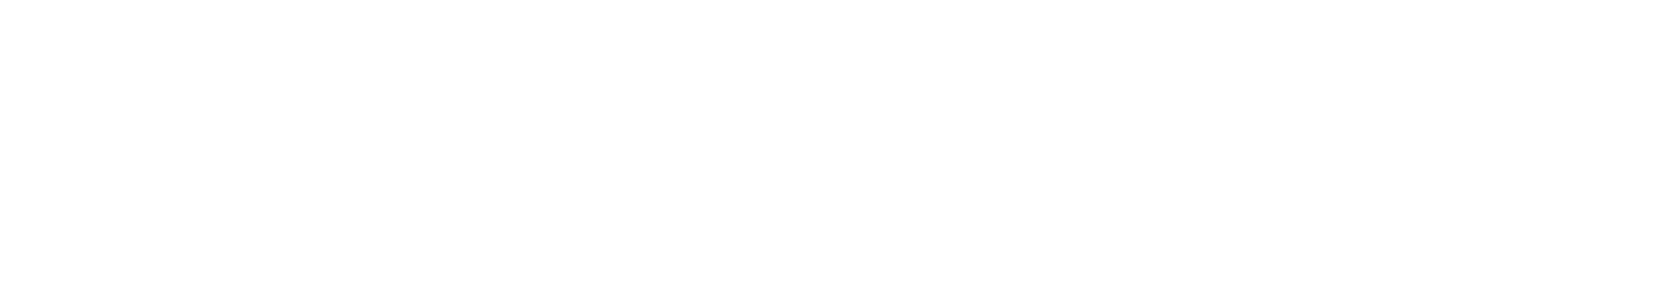 ERACM Université Côte d'Azur blanc